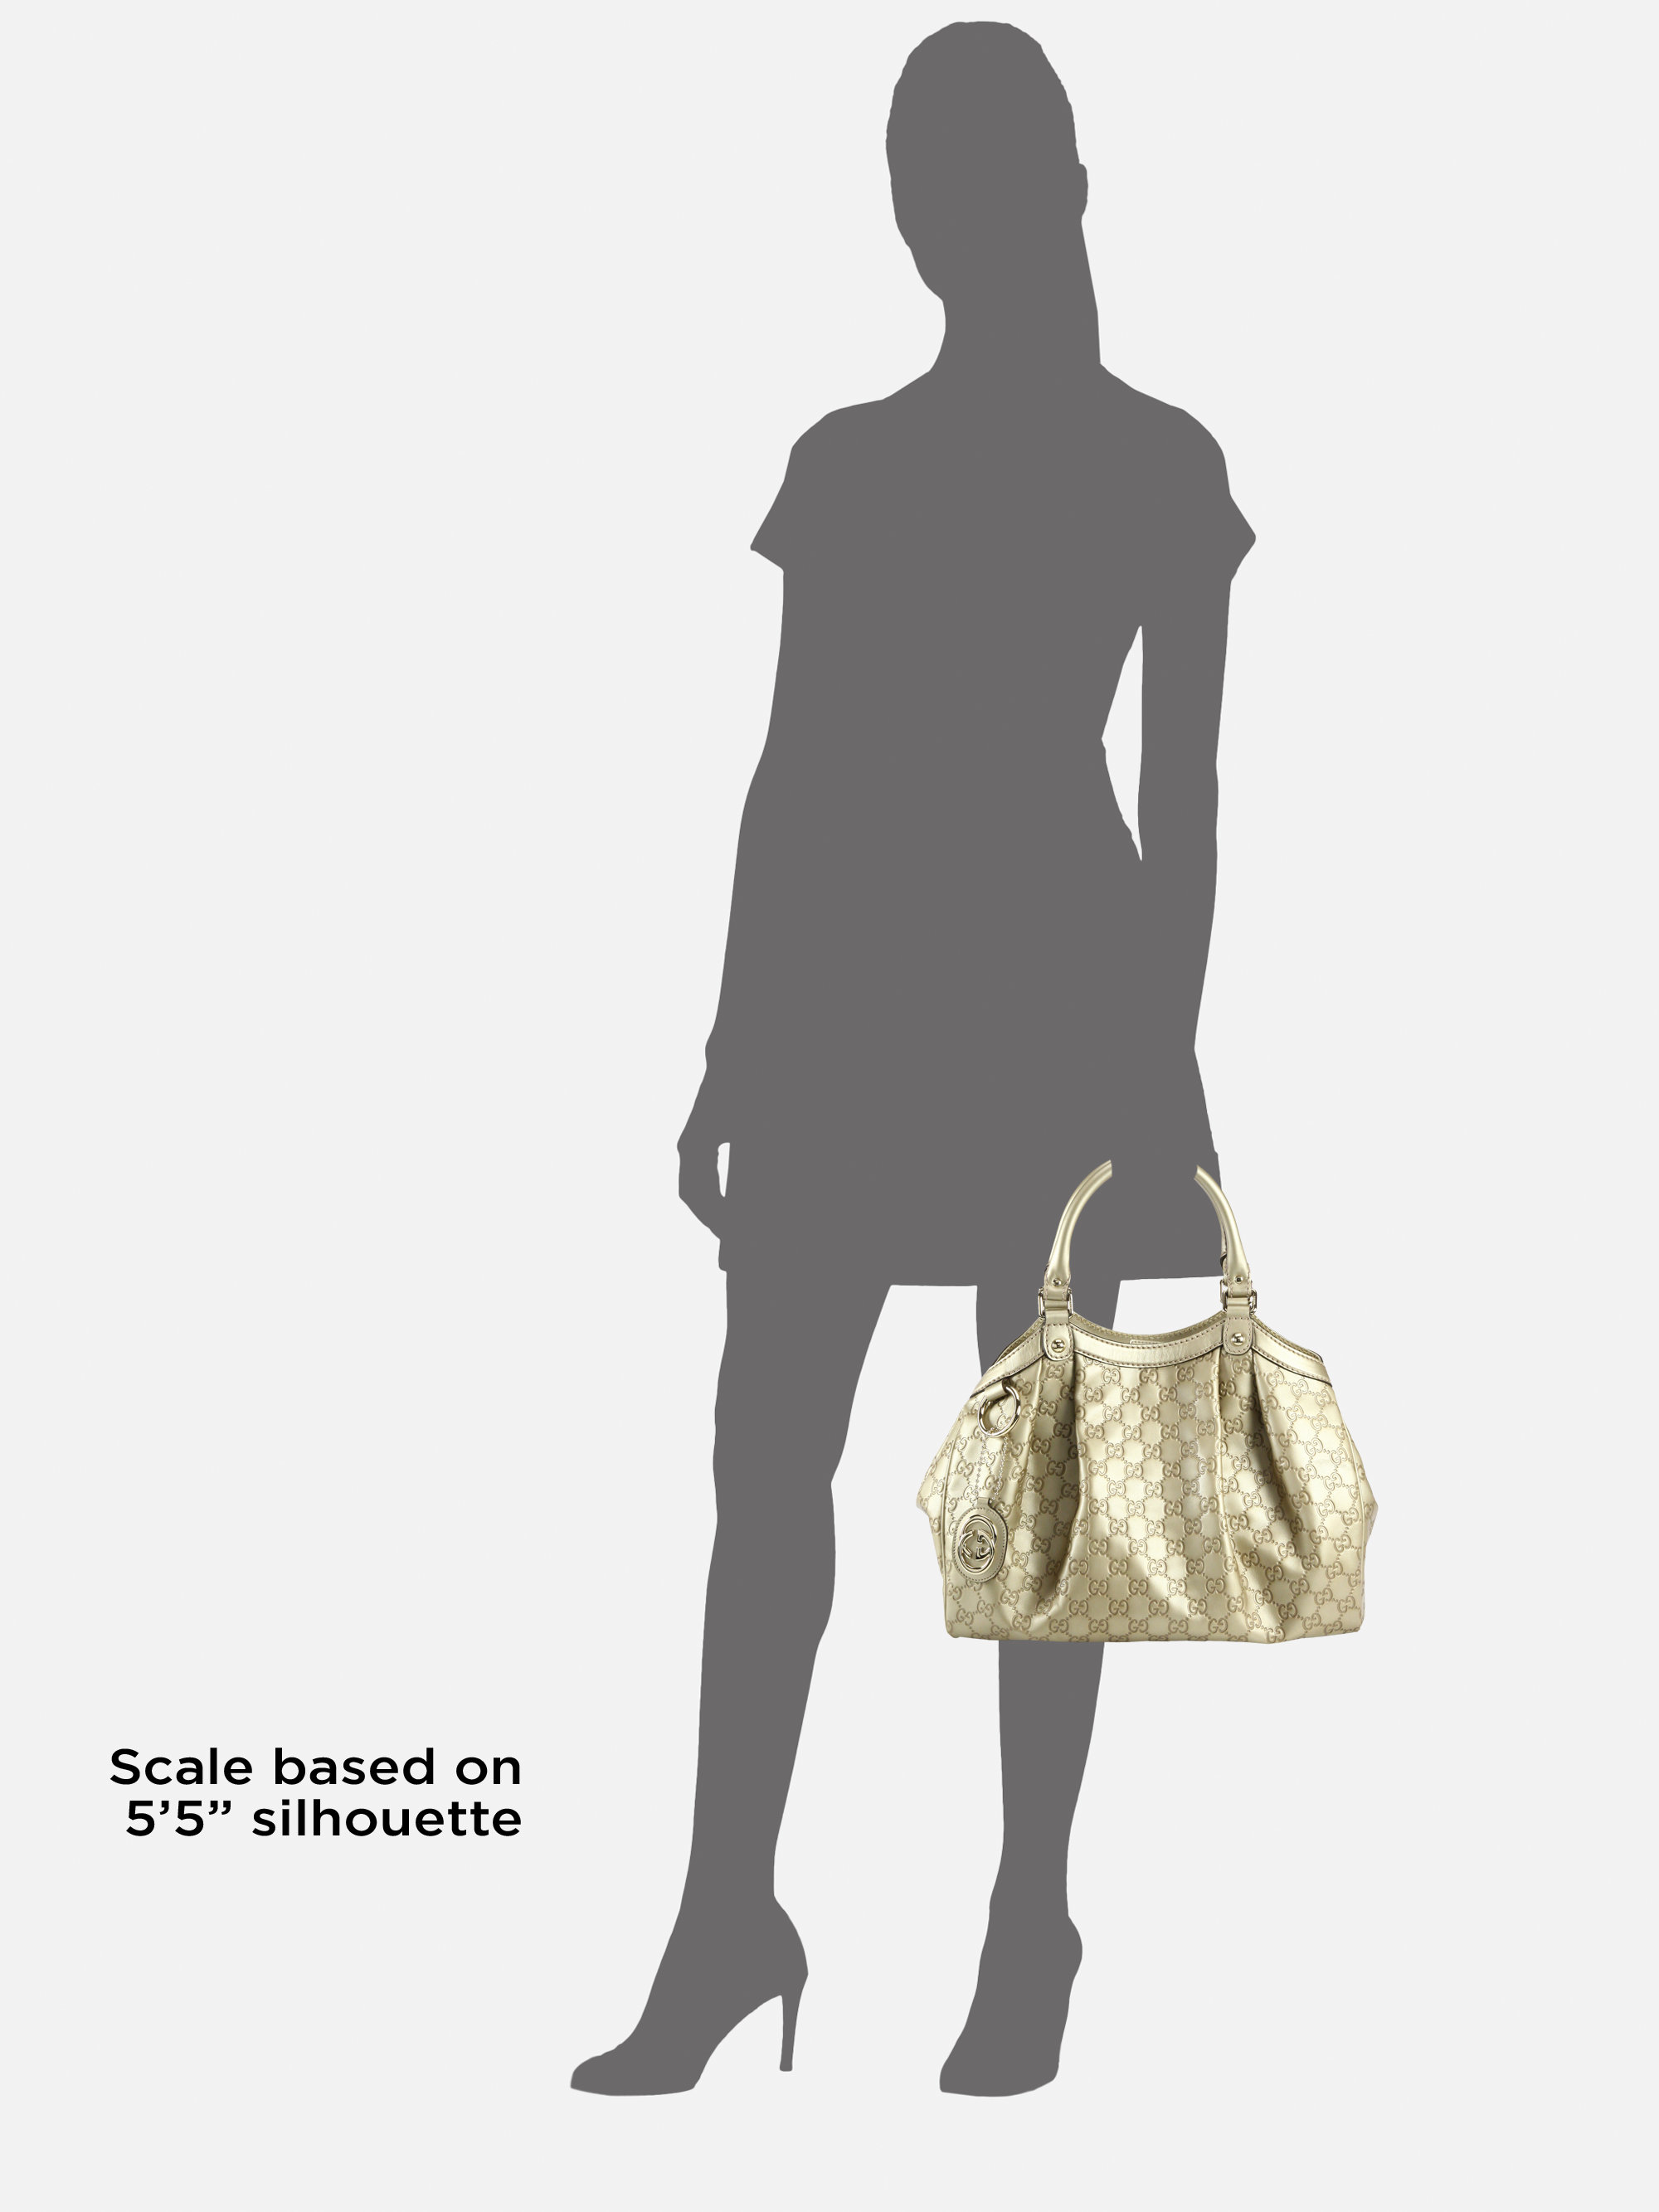 Gucci Sukey Medium Guccissima Tote Bag in Metallic - Lyst